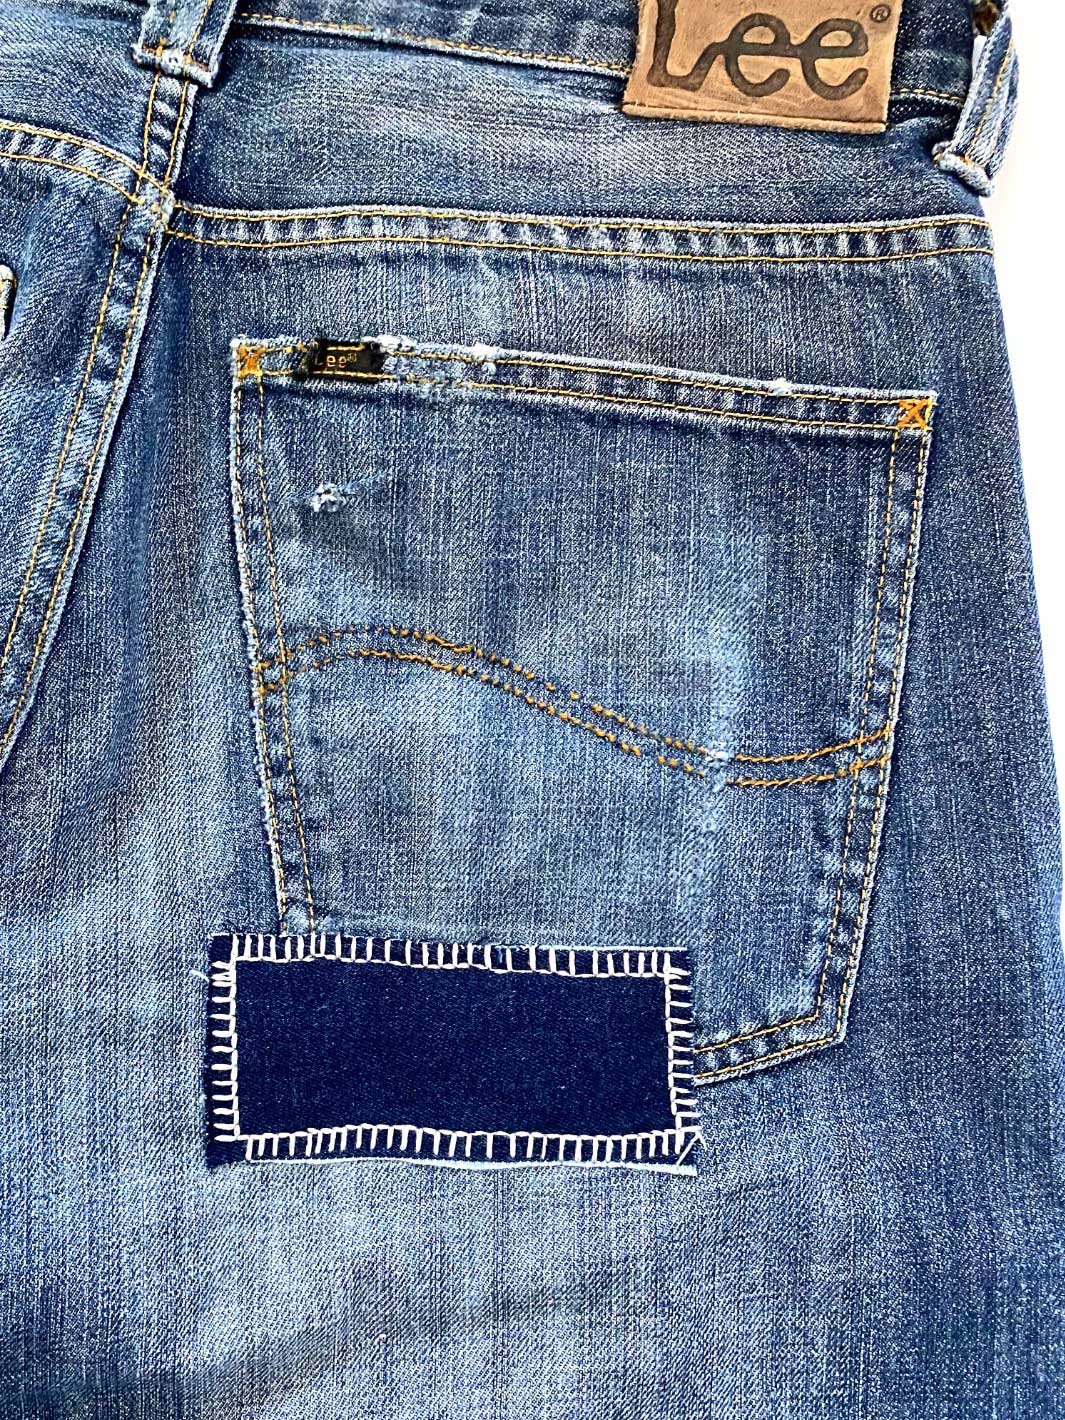 Herren Vintage Denim mittelblaue Waschung Größe 31/32 repariertes Loch mit dunkelblauen Jeans Stoff an hinterer rechter Gesässtasche 100% Baumwolle